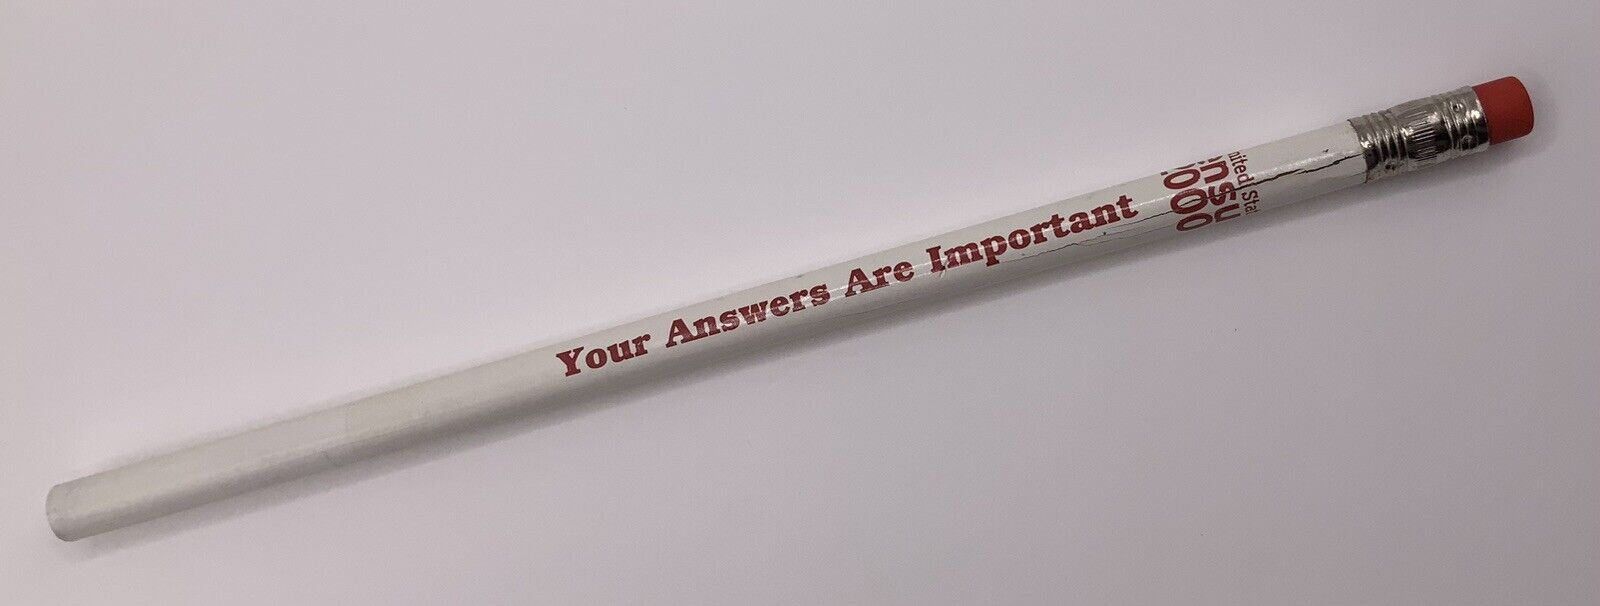 2000 White United States Census Pencil